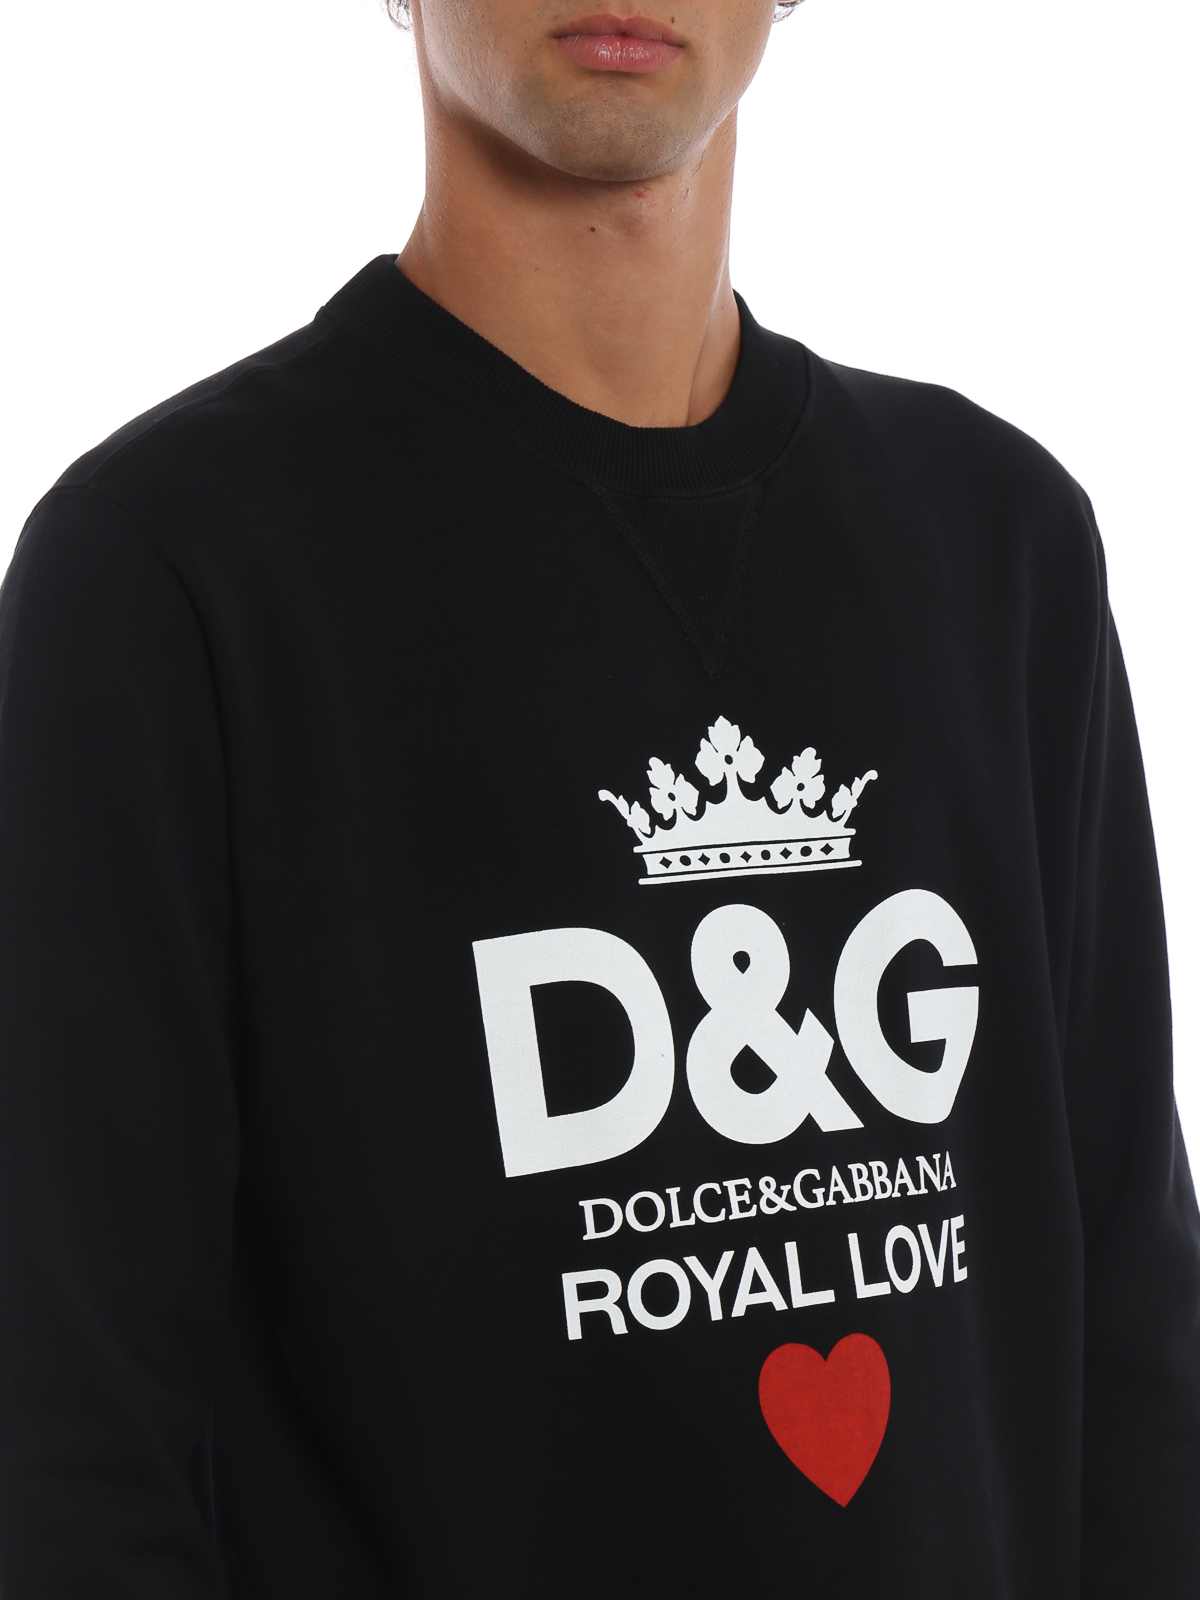 dolce gabbana royal love sweater